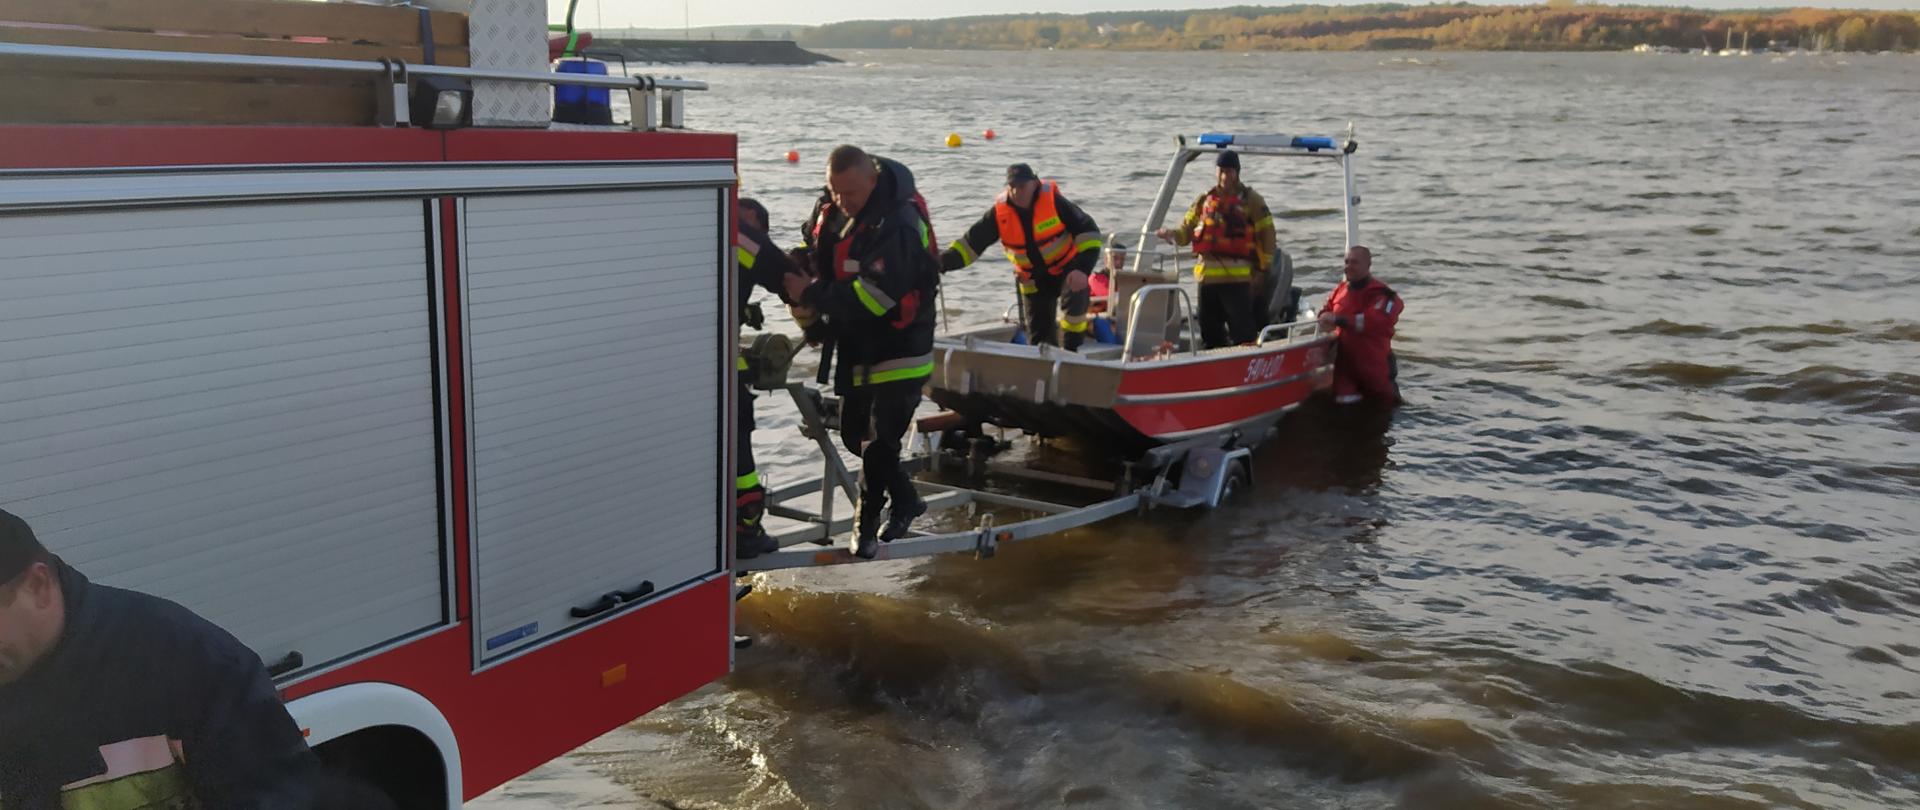 Samochód strażacki stoi nad brzegiem zalewu. Do samochodu przyczepiona jest przyczepka z łódką. Przyczepka jest częściowo w wodzie. Na łódce stoją strażacy. w tle widać dużą taflę wody. 